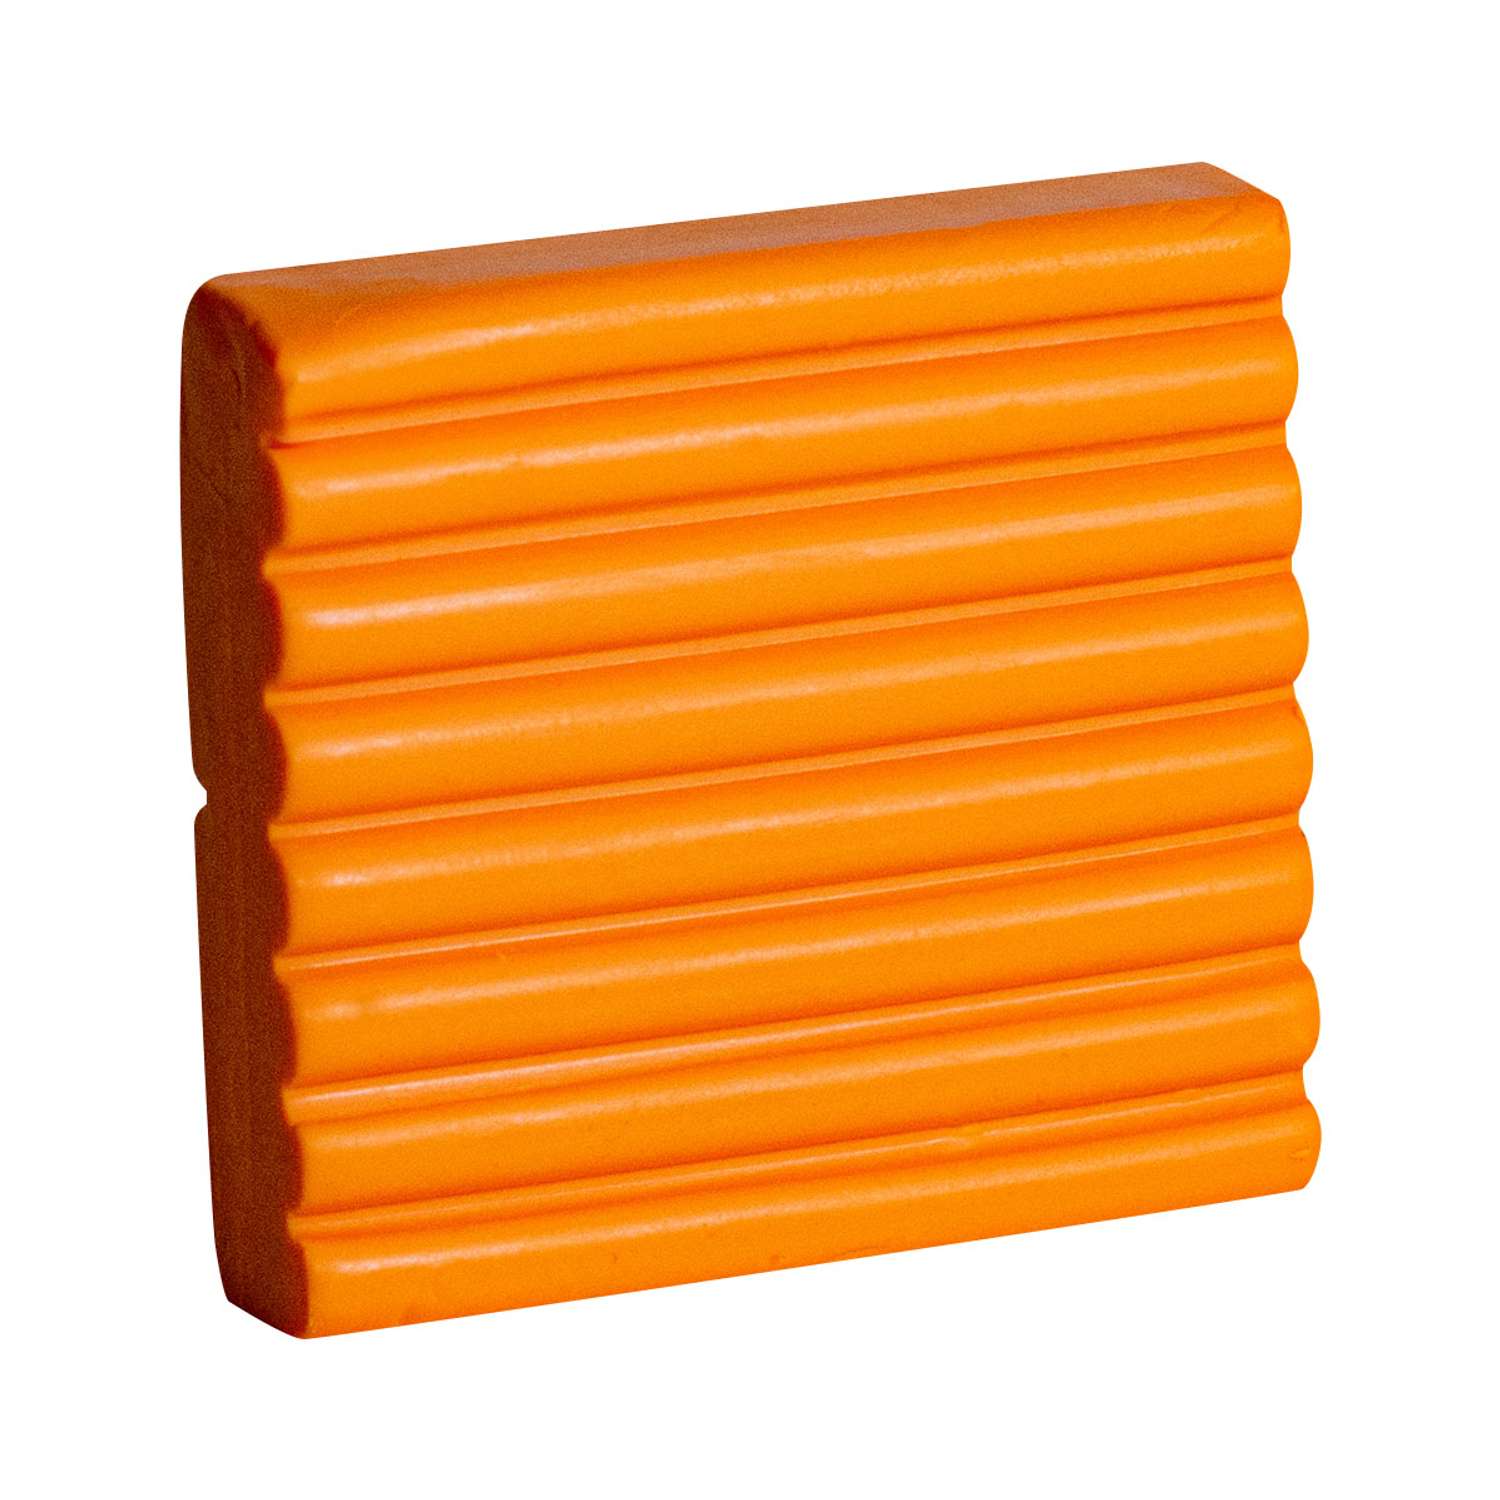 Пластика для запекания Artifact брус глина для лепки и творчества 56 г 123 классический апельсиновый - фото 4